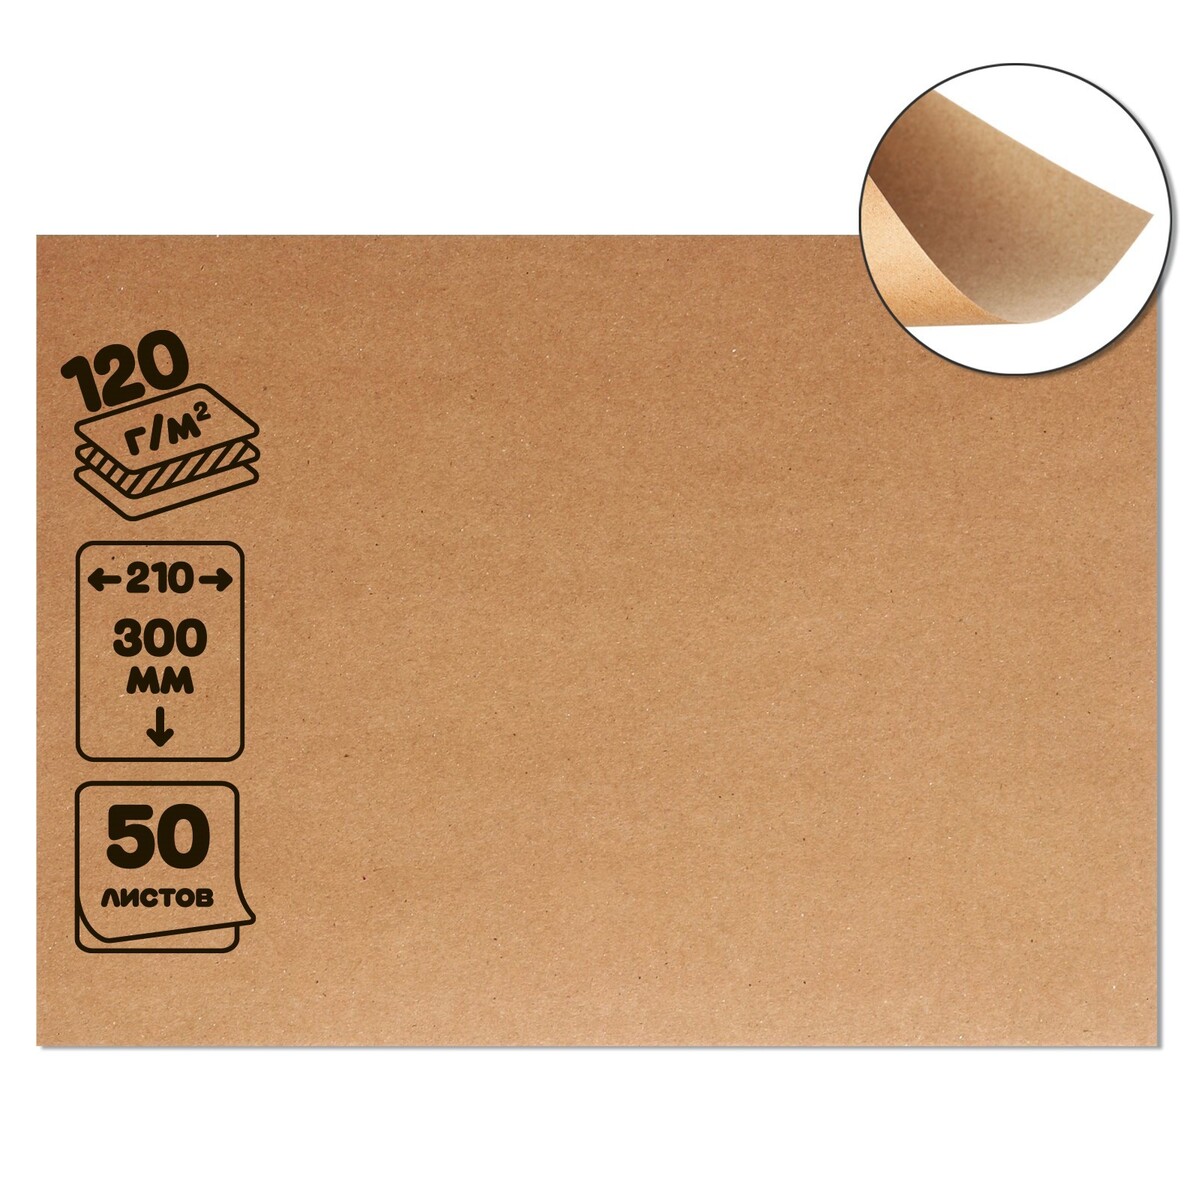 Крафт-бумага, 210 х 300 мм, 120 г/м2, набор 50 листов, коричневая/серая набор коробок 3 в 1 обратный конус крафт без крышек с ручкой 11 14 х 14 16 х 18 21